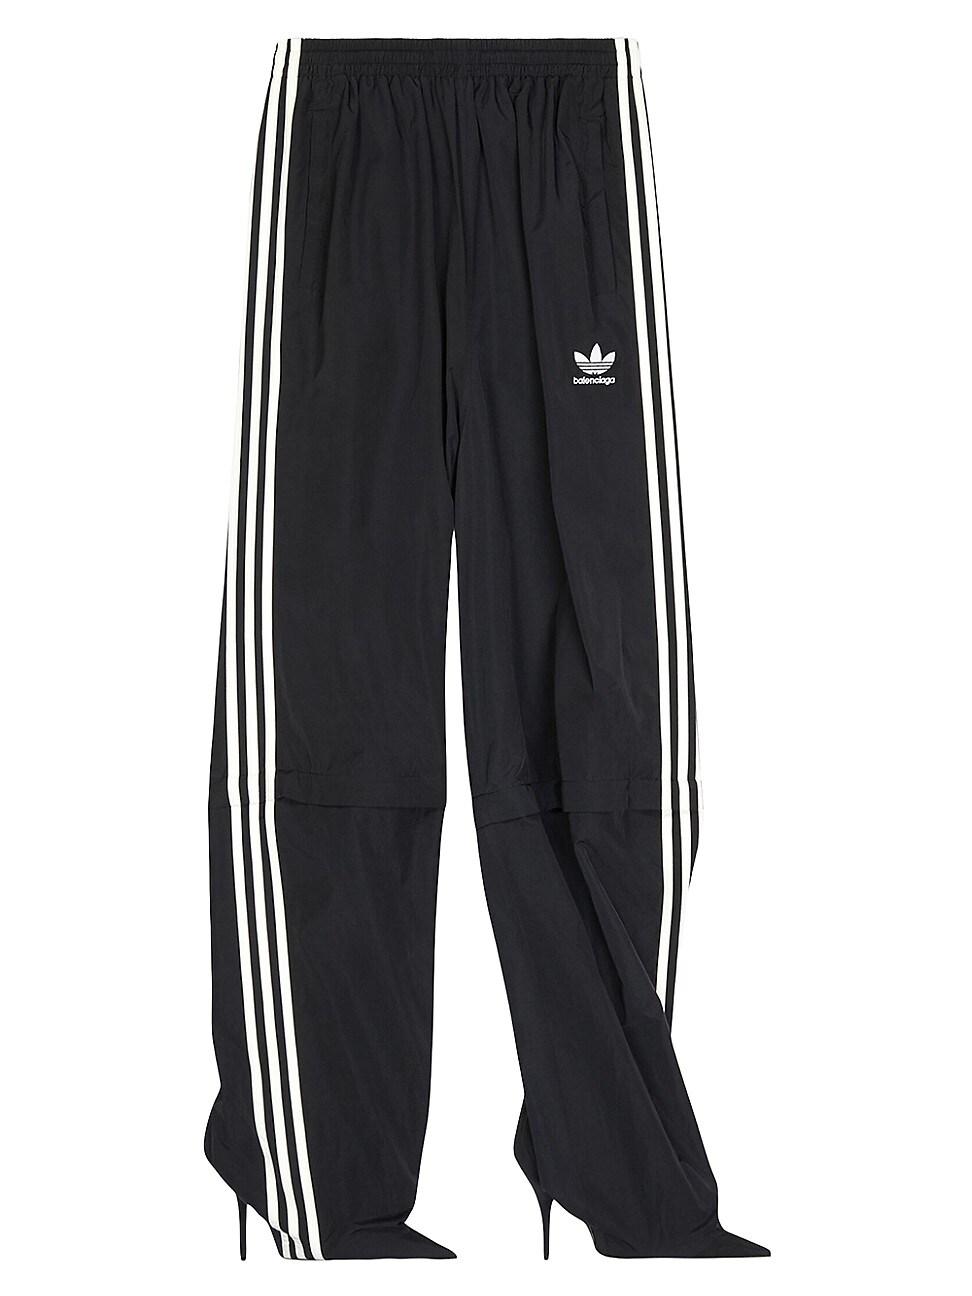 Balenciaga / Adidas Pantashoes in Black | Lyst